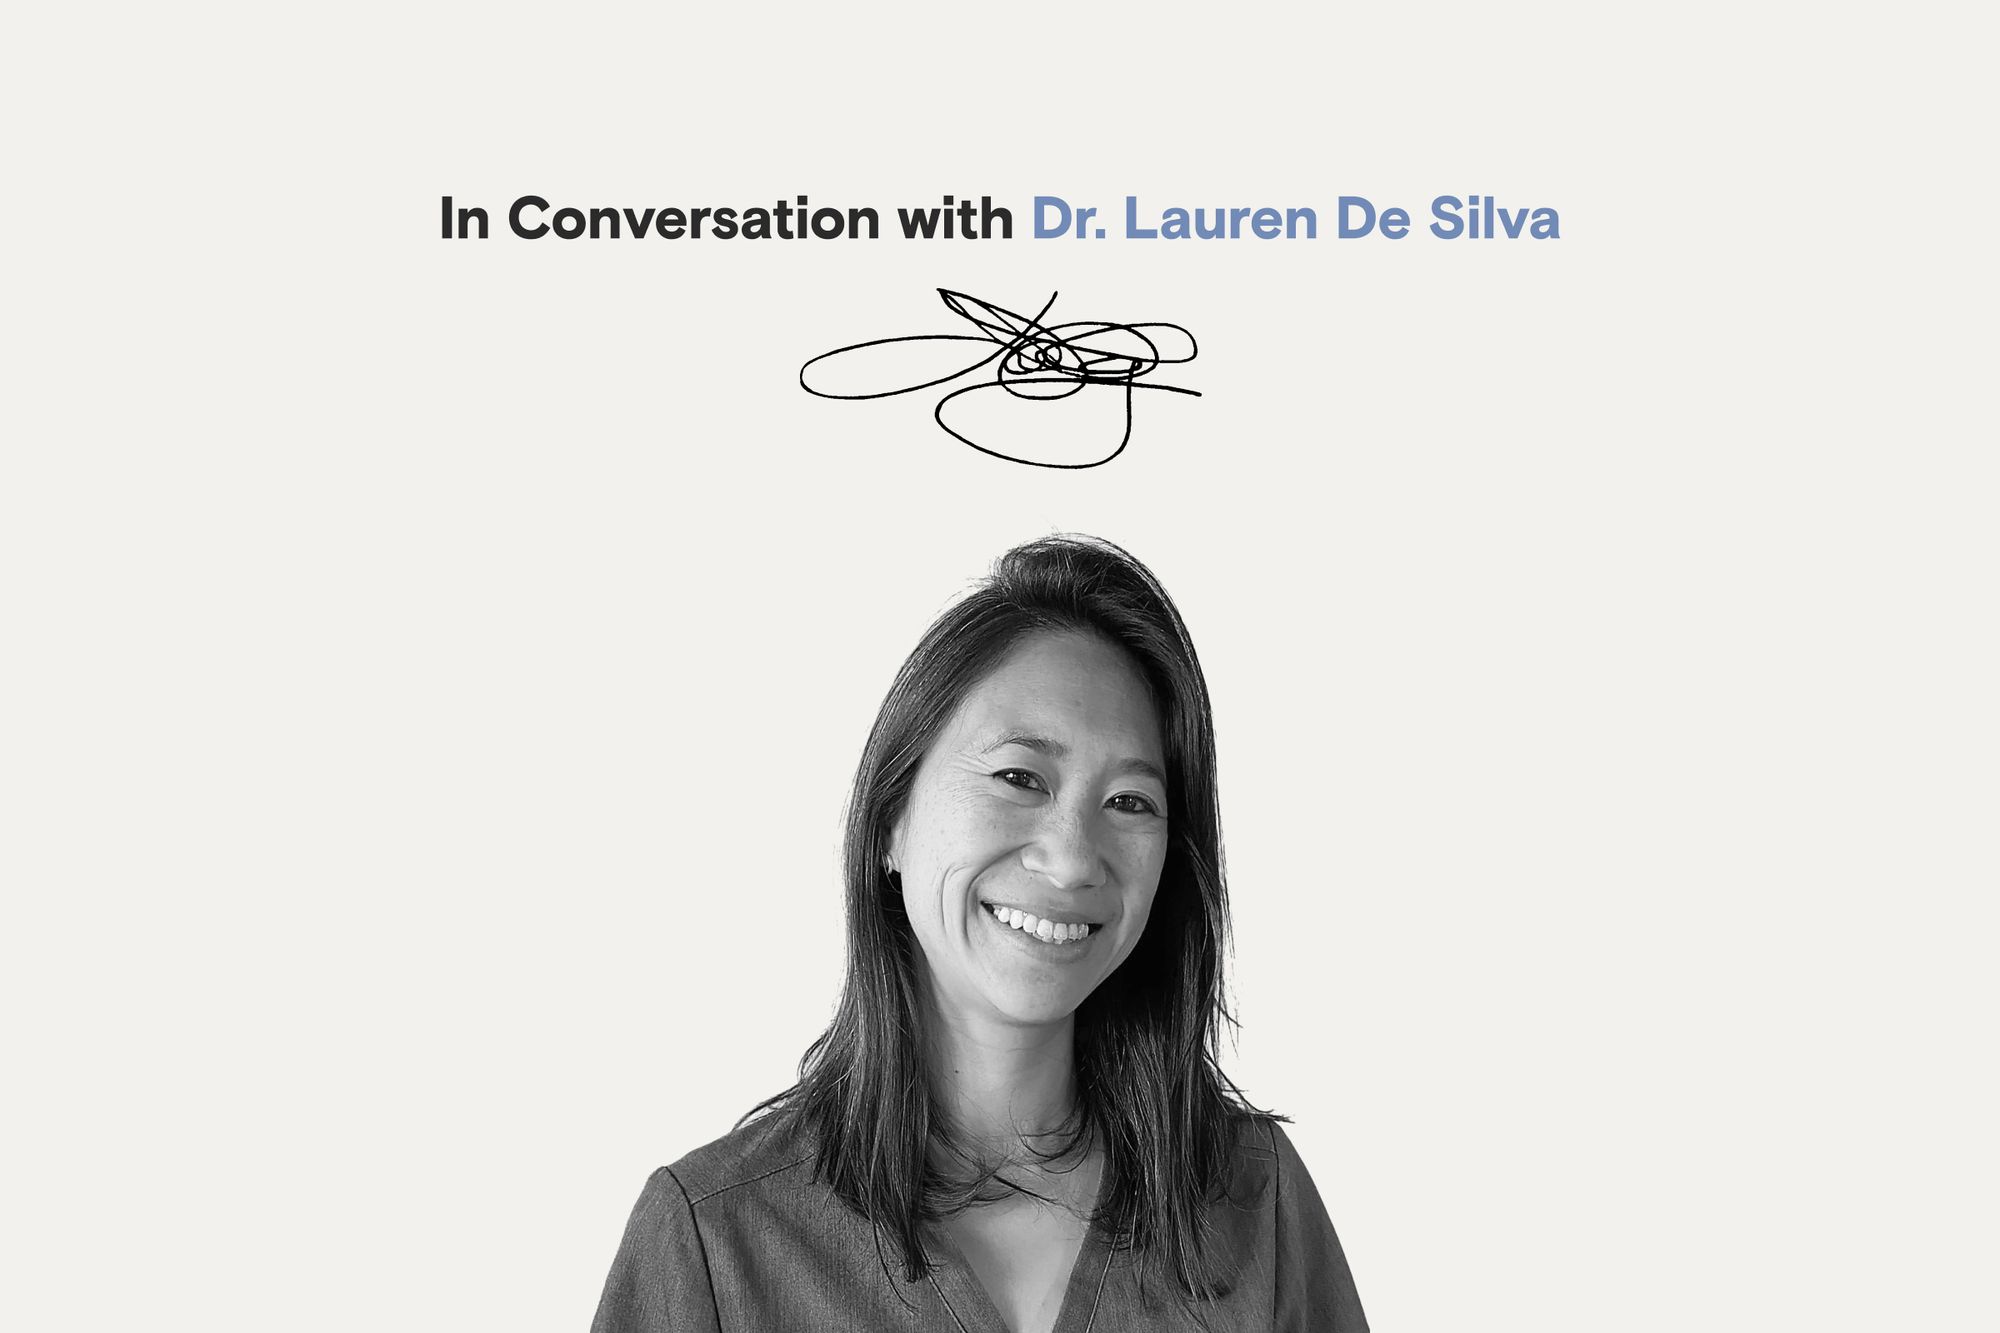 In Conversation with Dr. Lauren De Silva